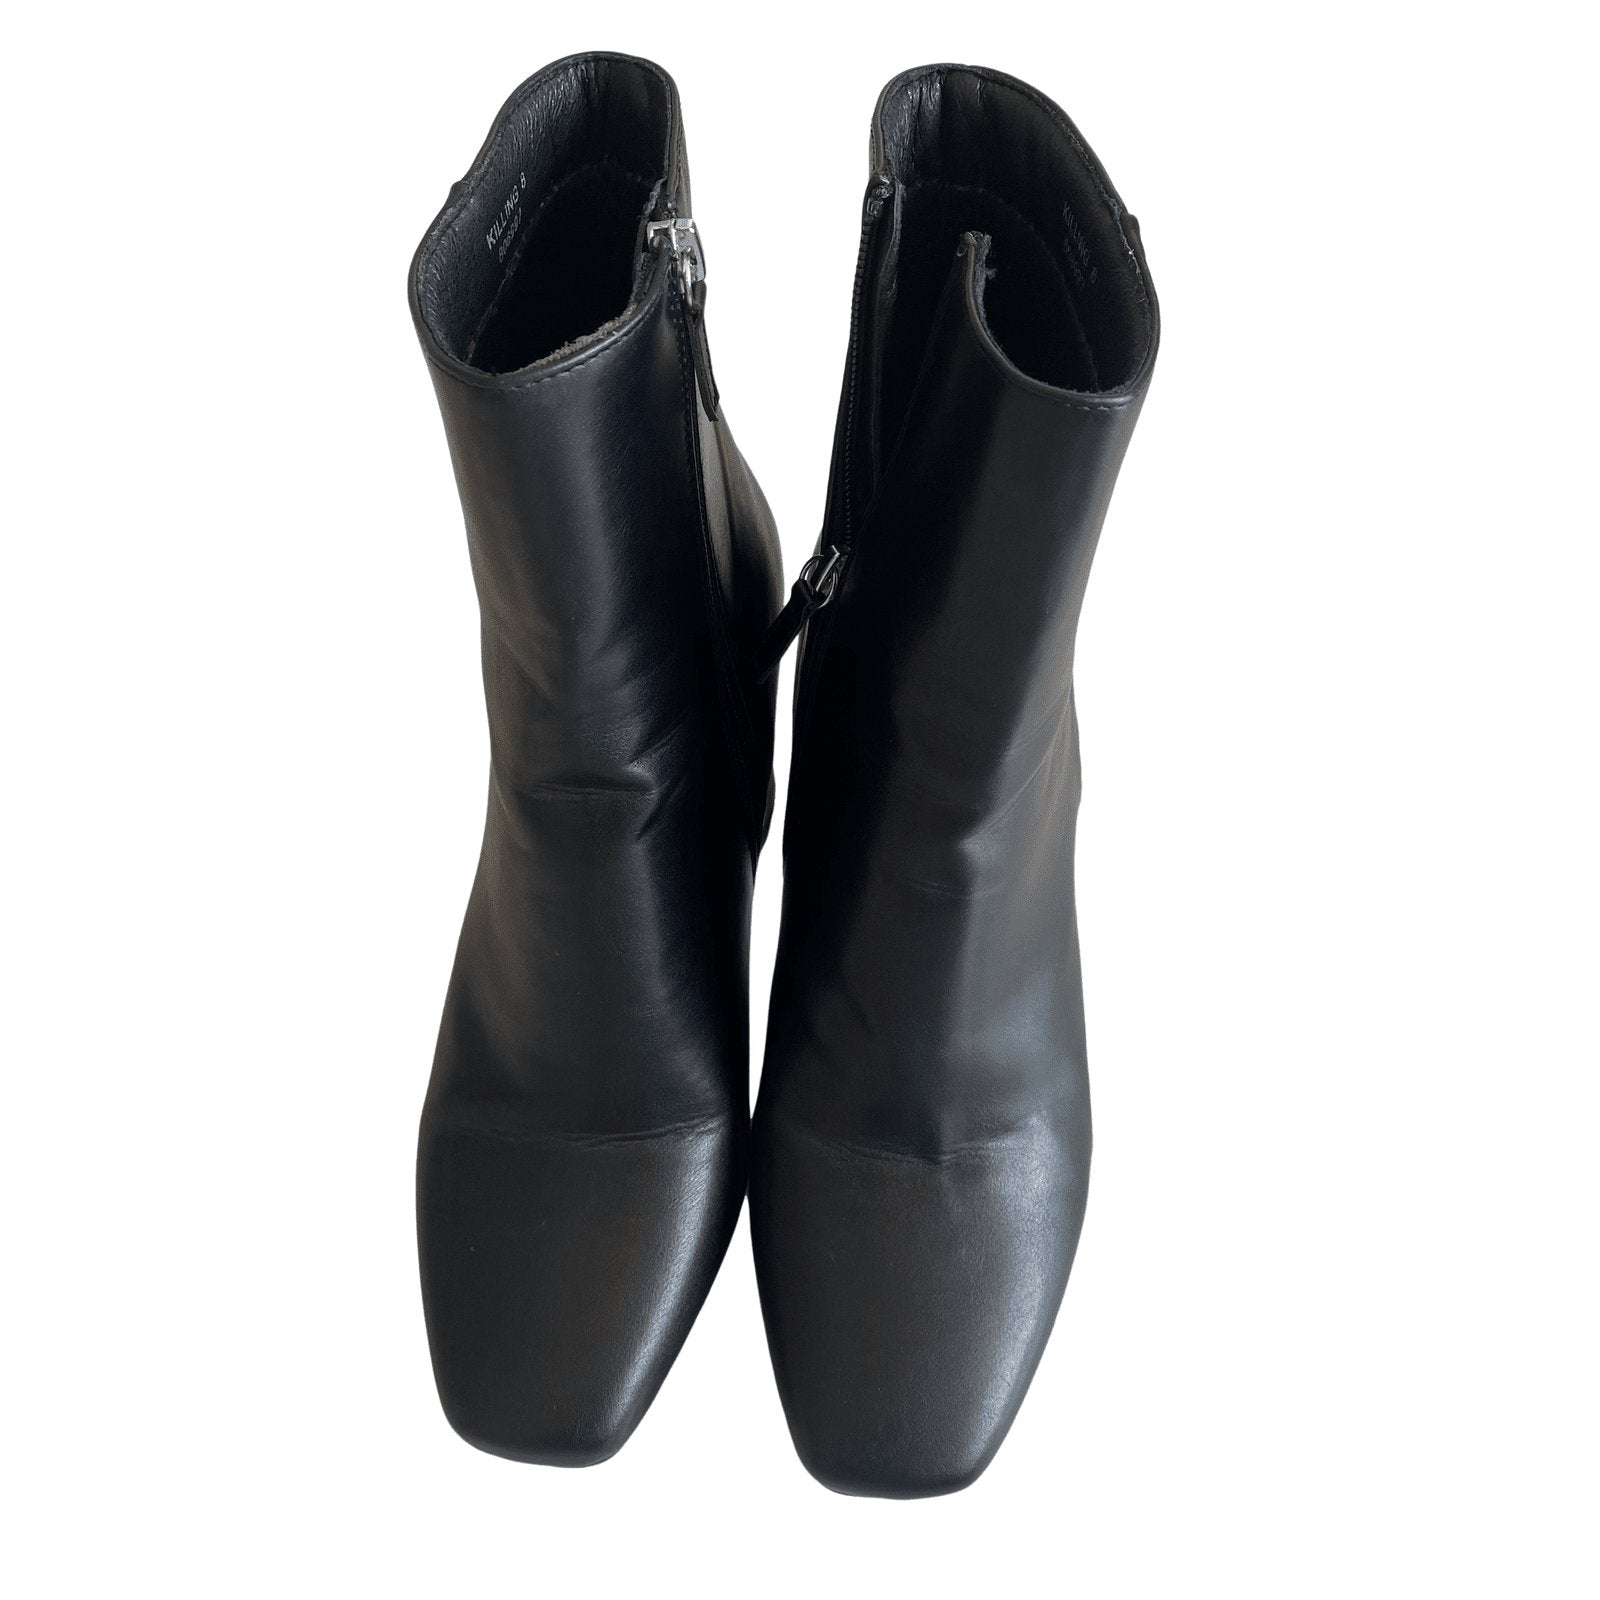 Novo boots | size 8 or EU 39